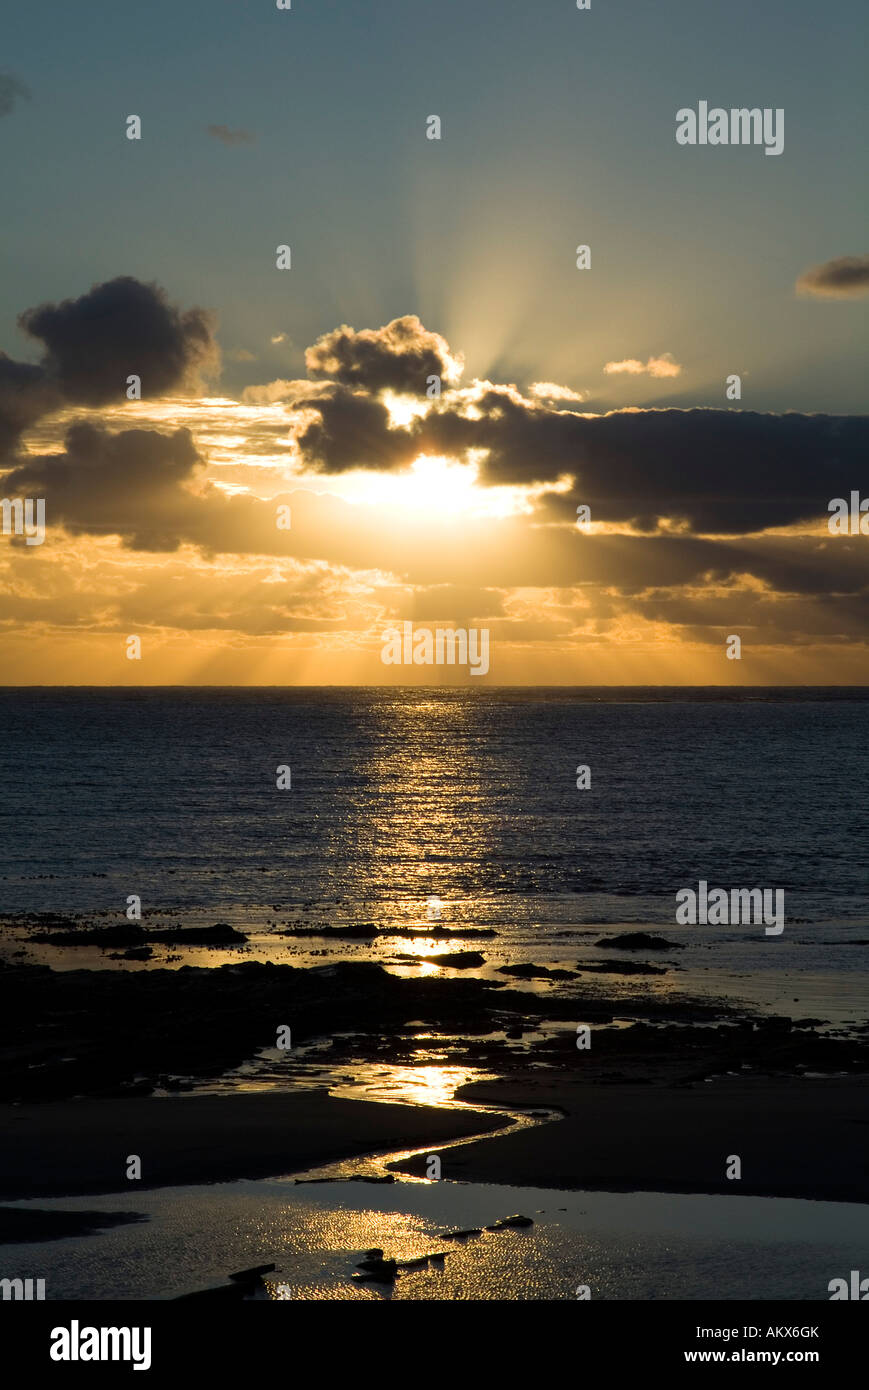 Dh spiaggia WARBETH ORKNEY tramonto oltre Oceano Atlantico settentrionale Foto Stock